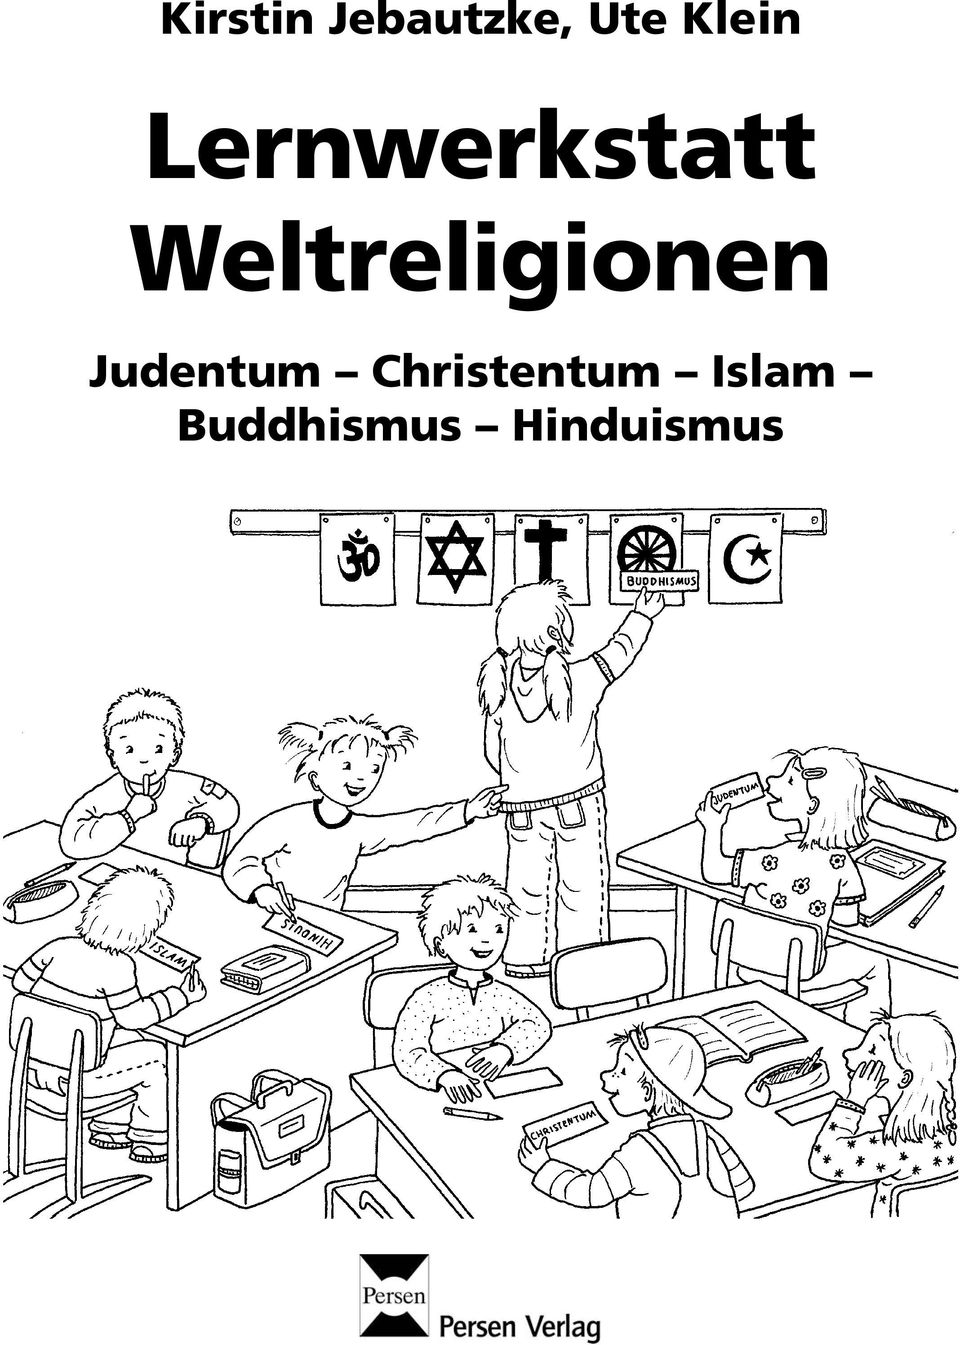 Weltreligionen Judentum